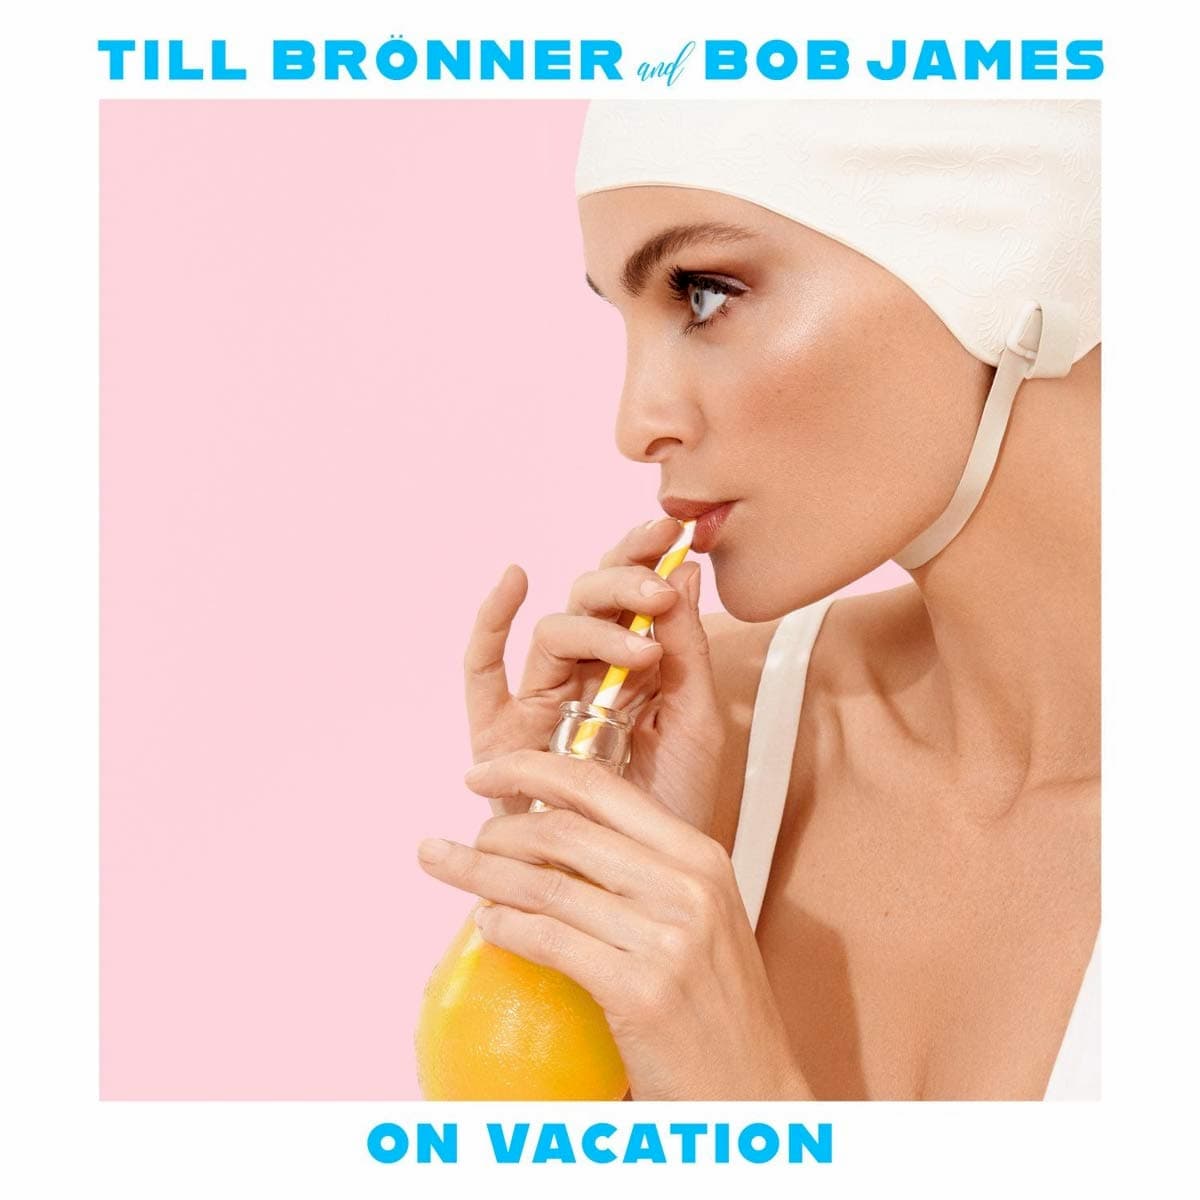 Neue Till Brönner CD mit Bob James “On Vacation